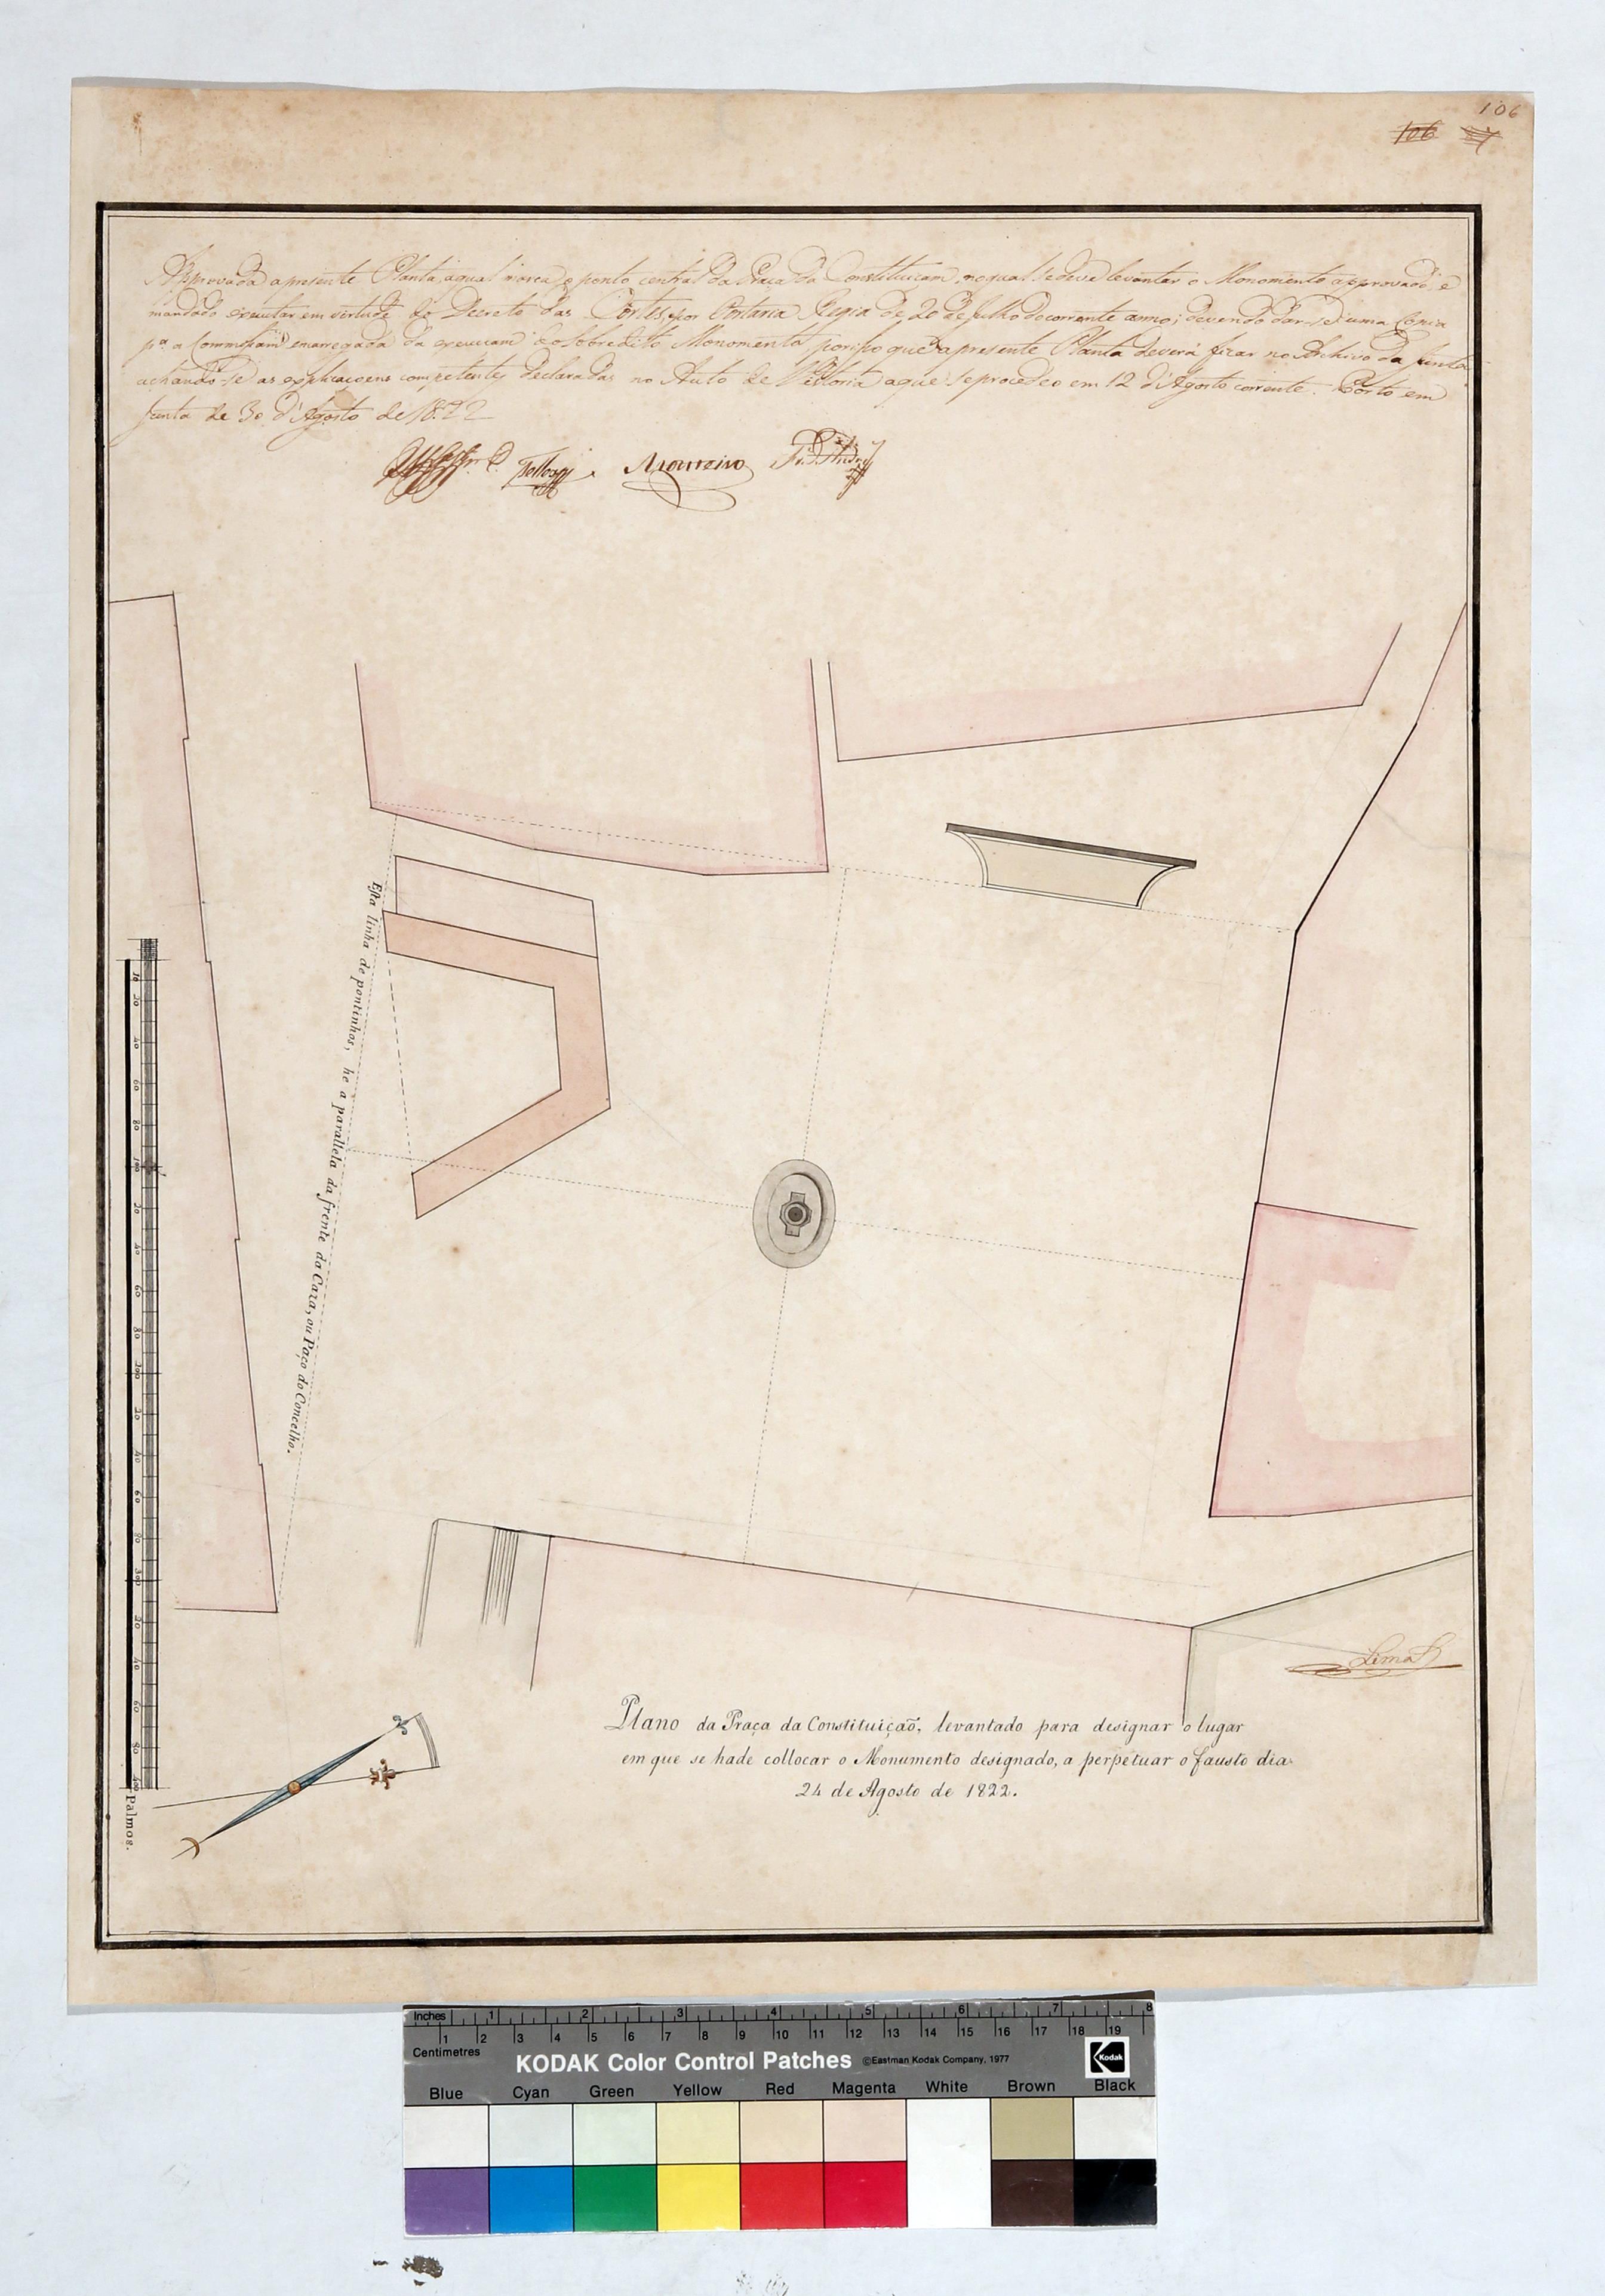 Plano da Praça da Constituição, levantado para designar o lugar em que se há-de colocar o monumento designado a perpetuar o fausto dia 24 de Agosto de 1822